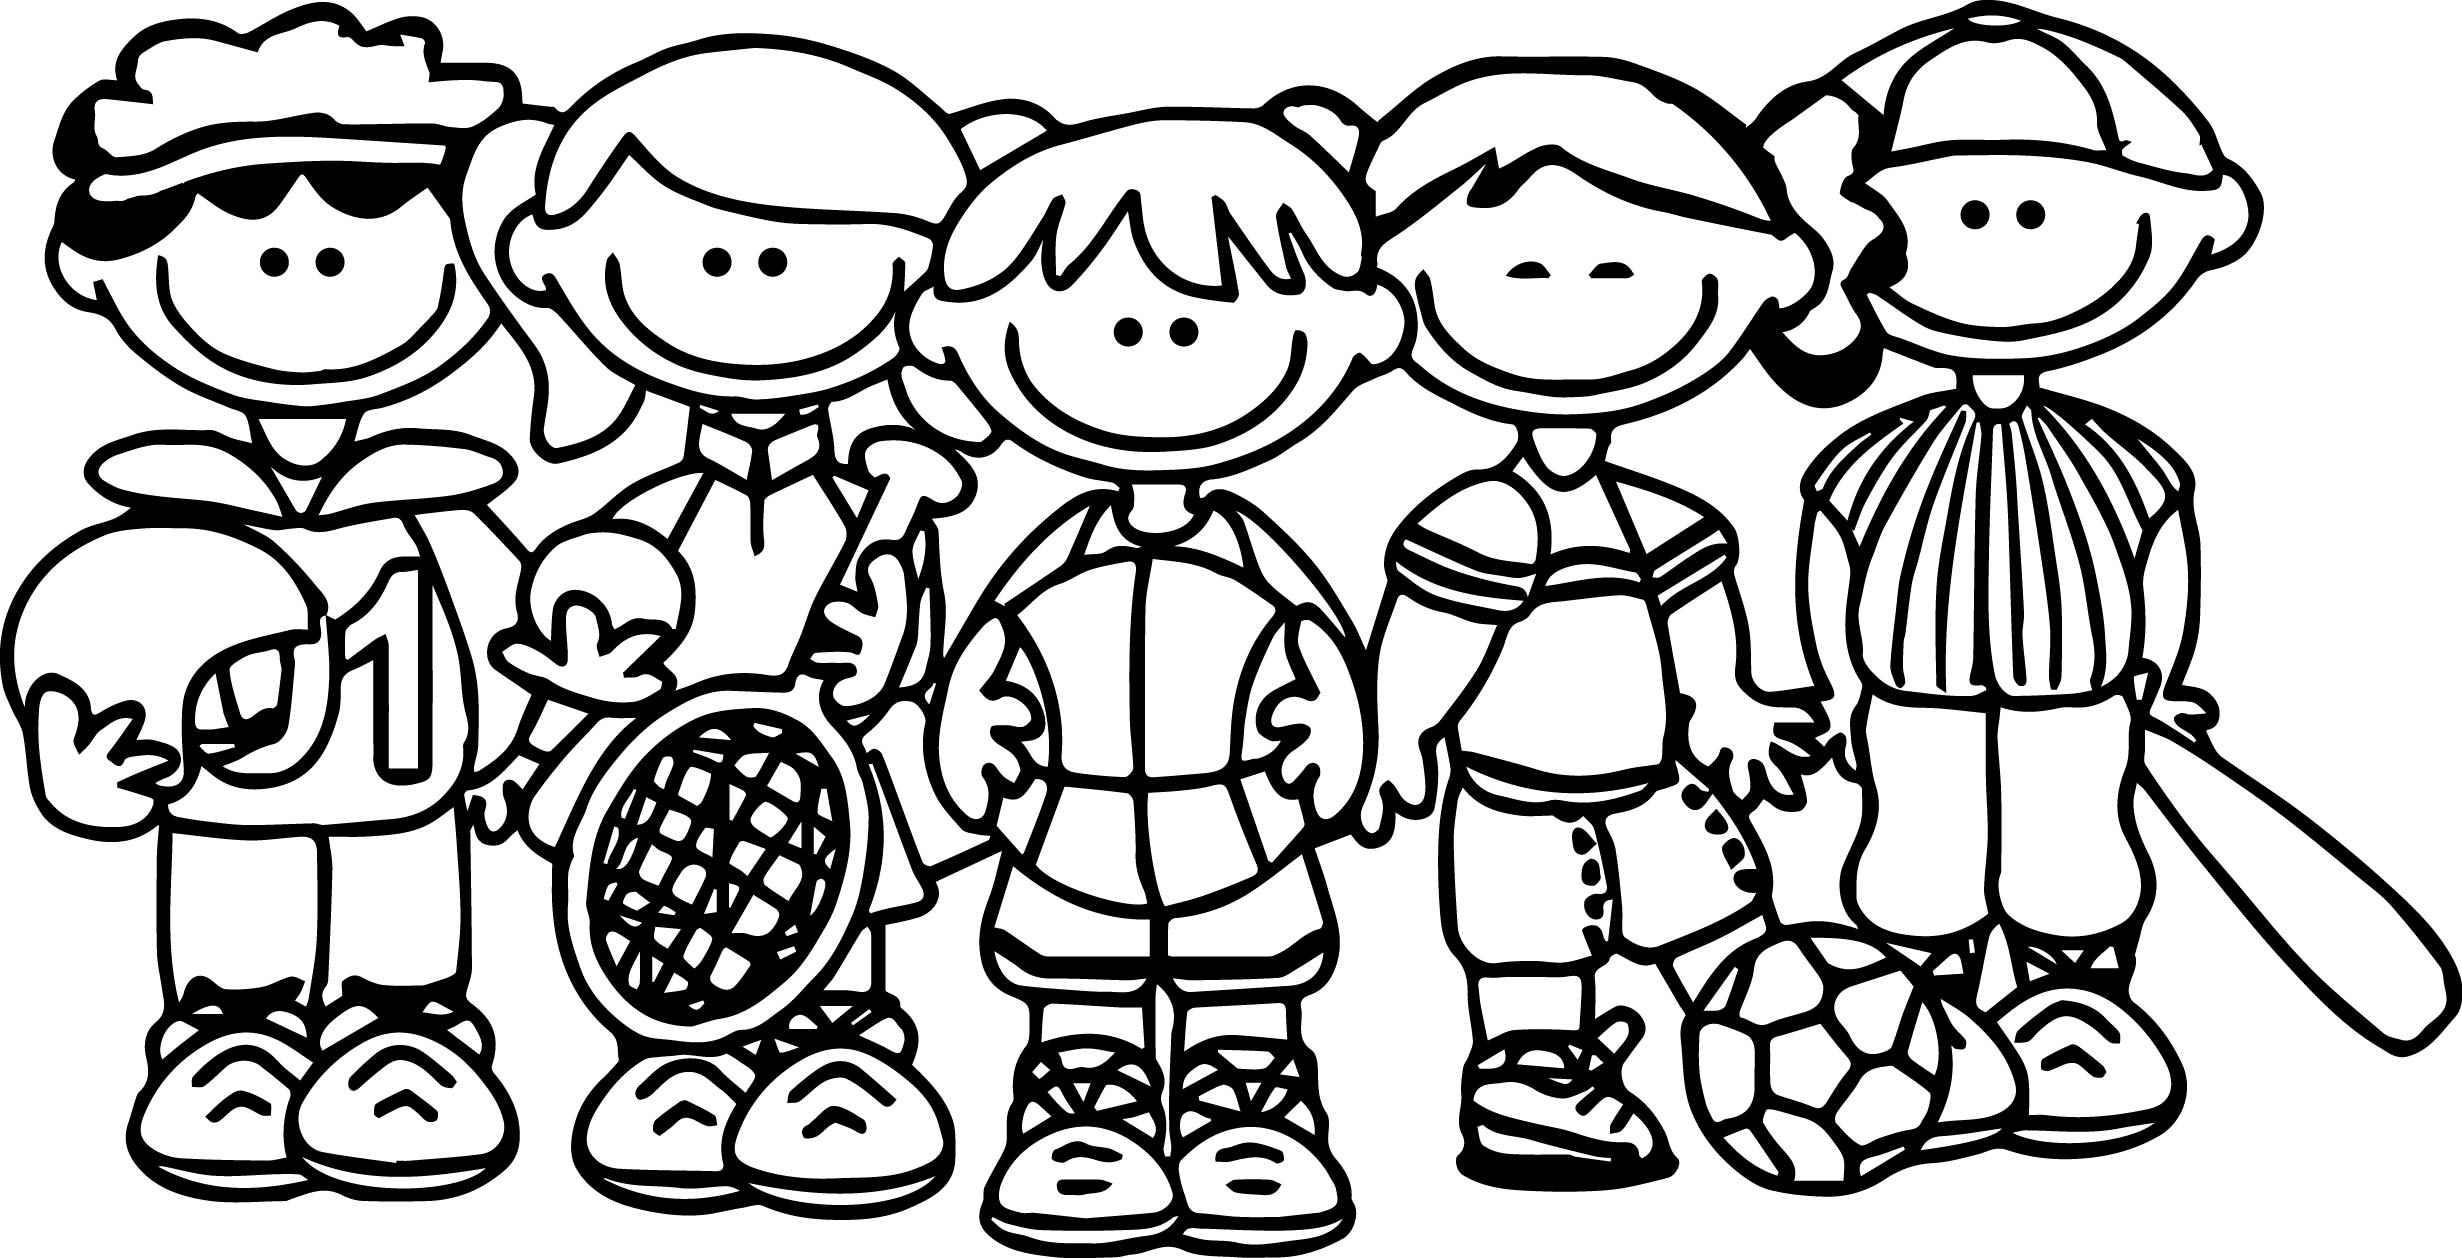 Раскраска спортивная семья для детей